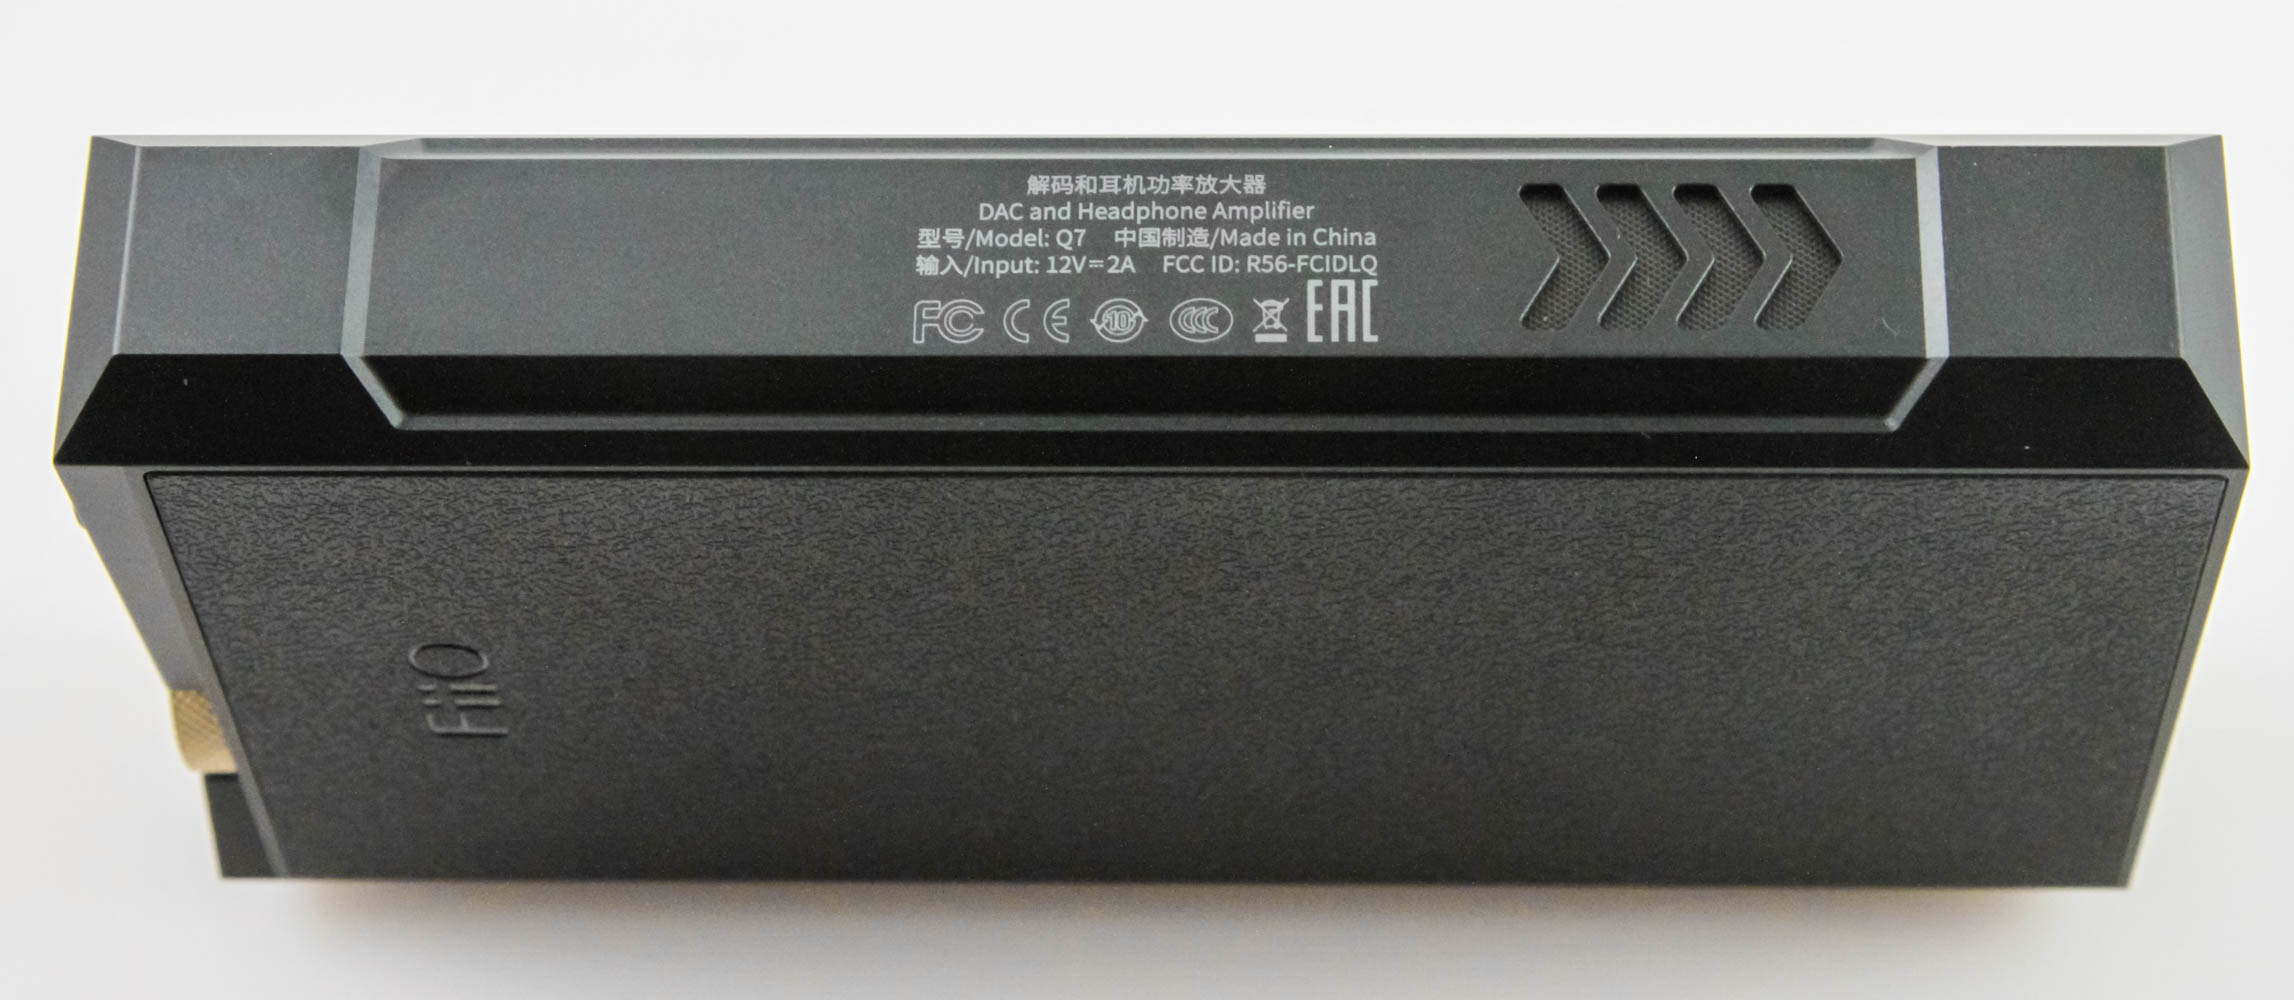 FiiO Announces Its Q15 Flagship Portable Headphone DAC Amplifier